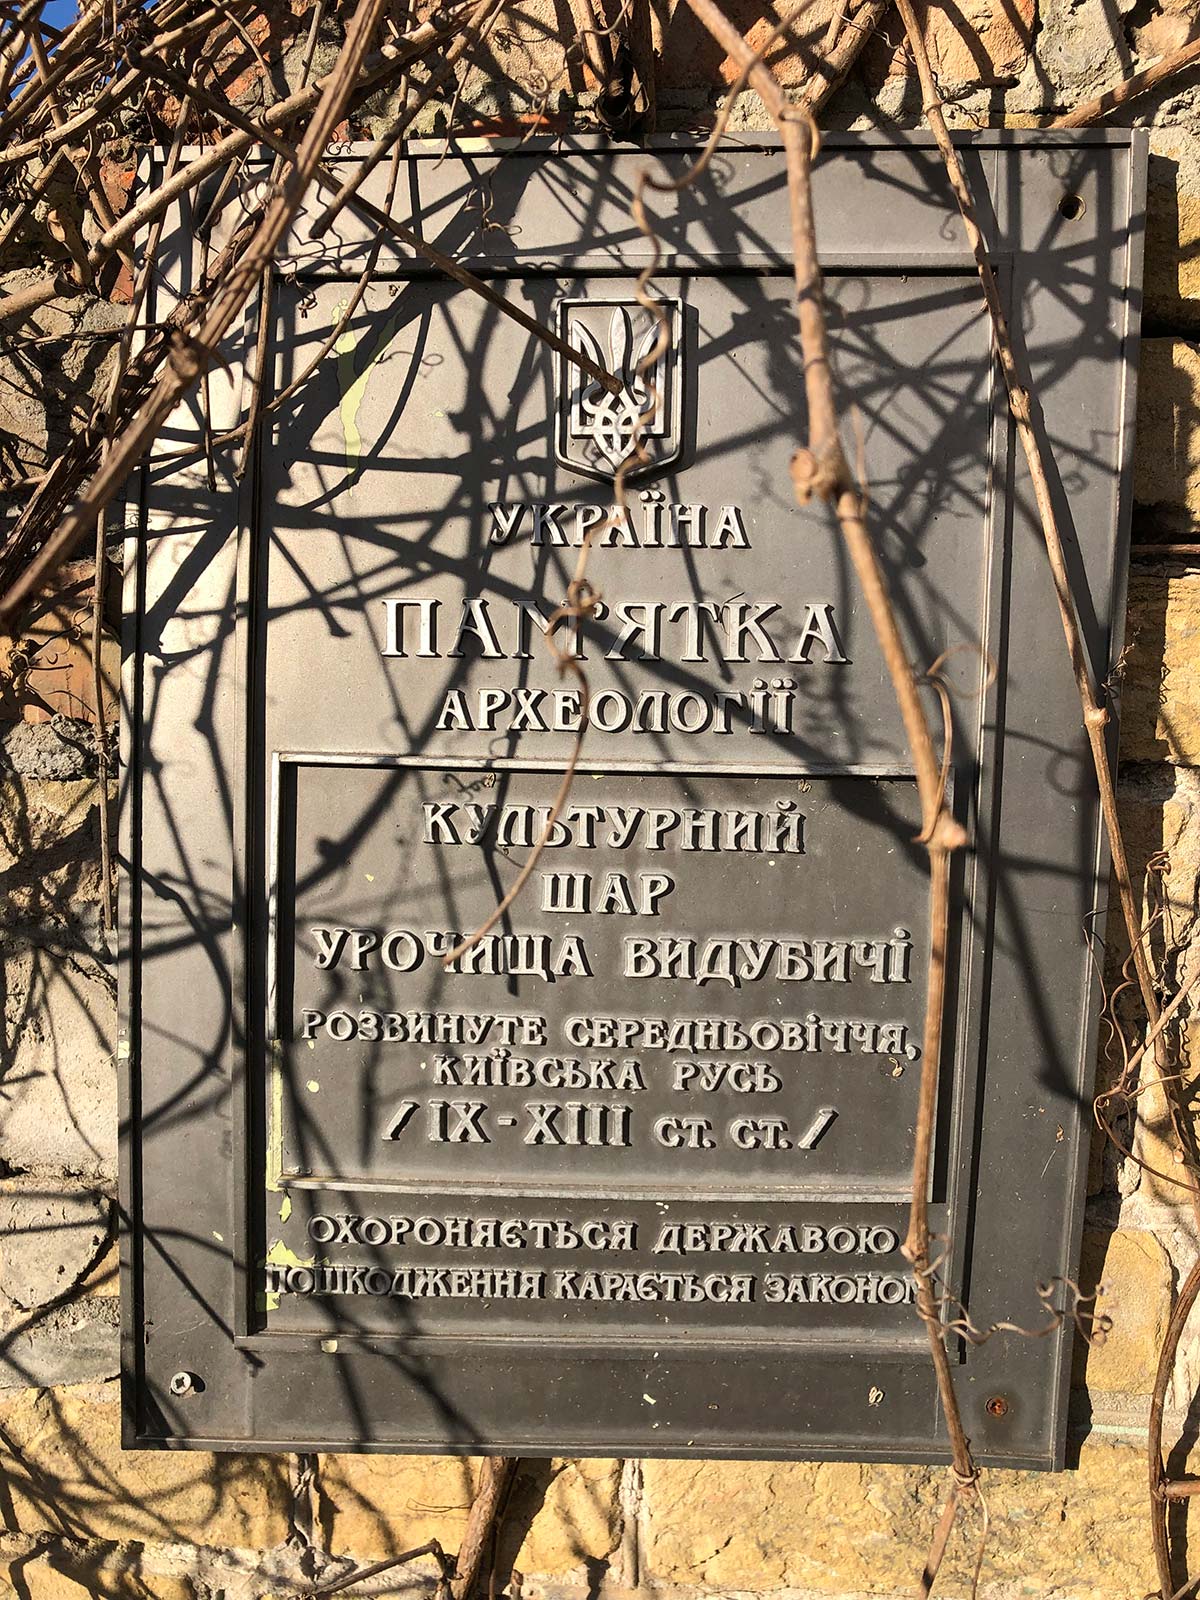 Цвітіння азалії та камелії у київському ботсаду Гришка